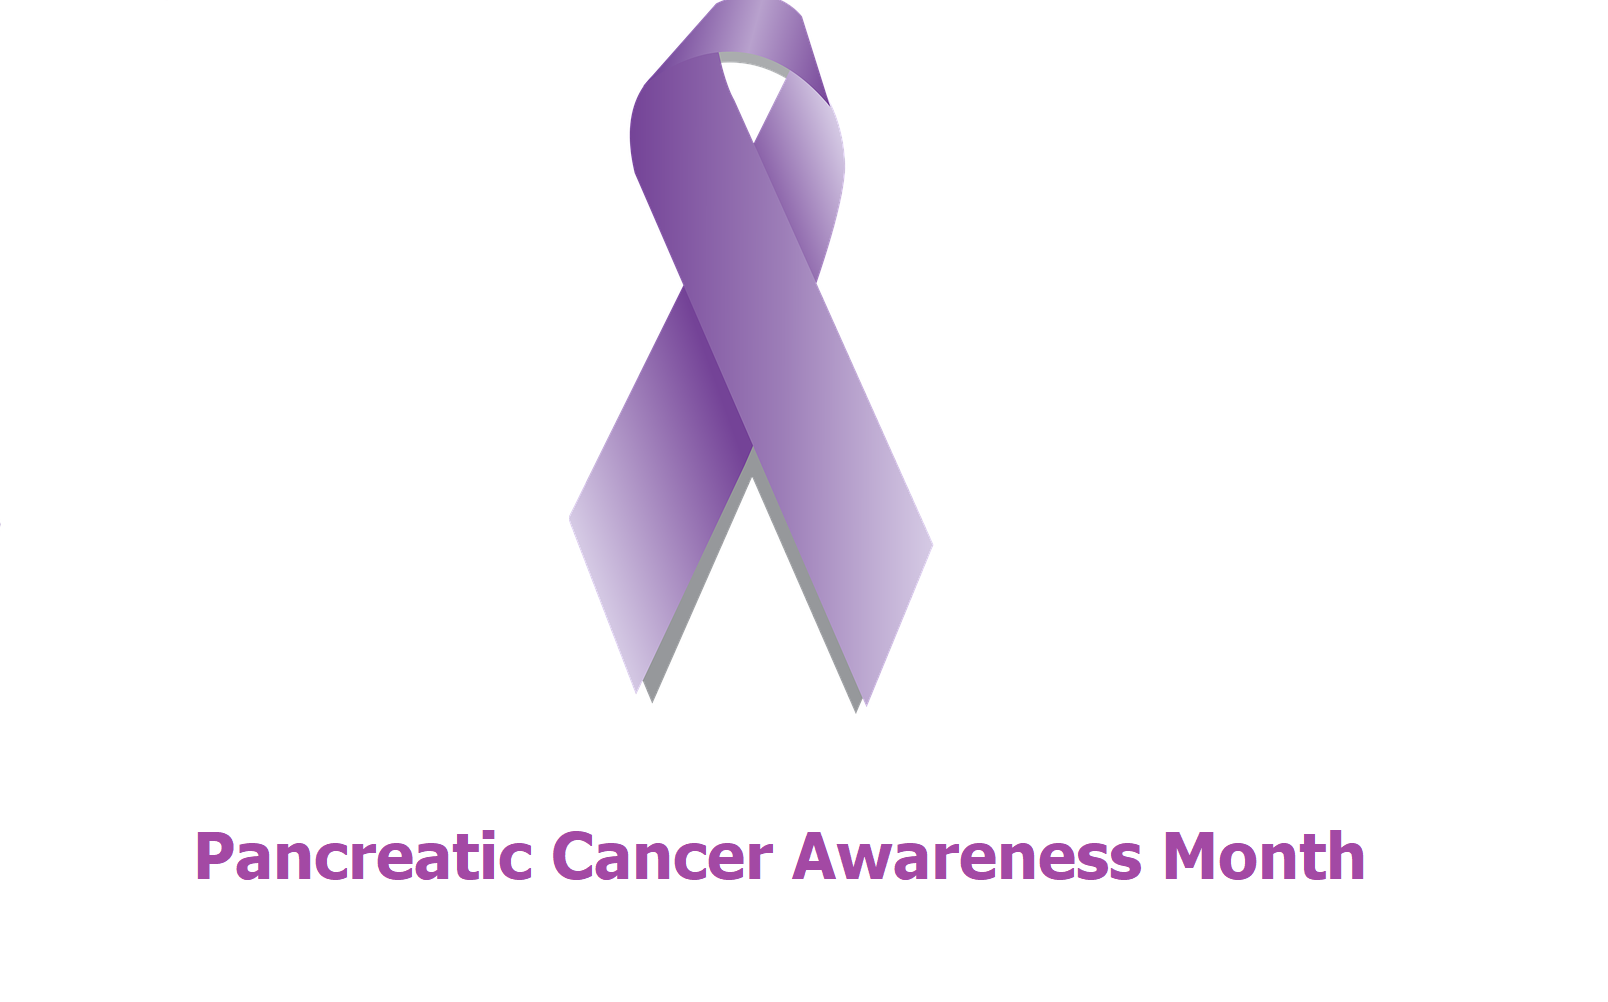 Pancreatic Cancer Awareness Month November 2018